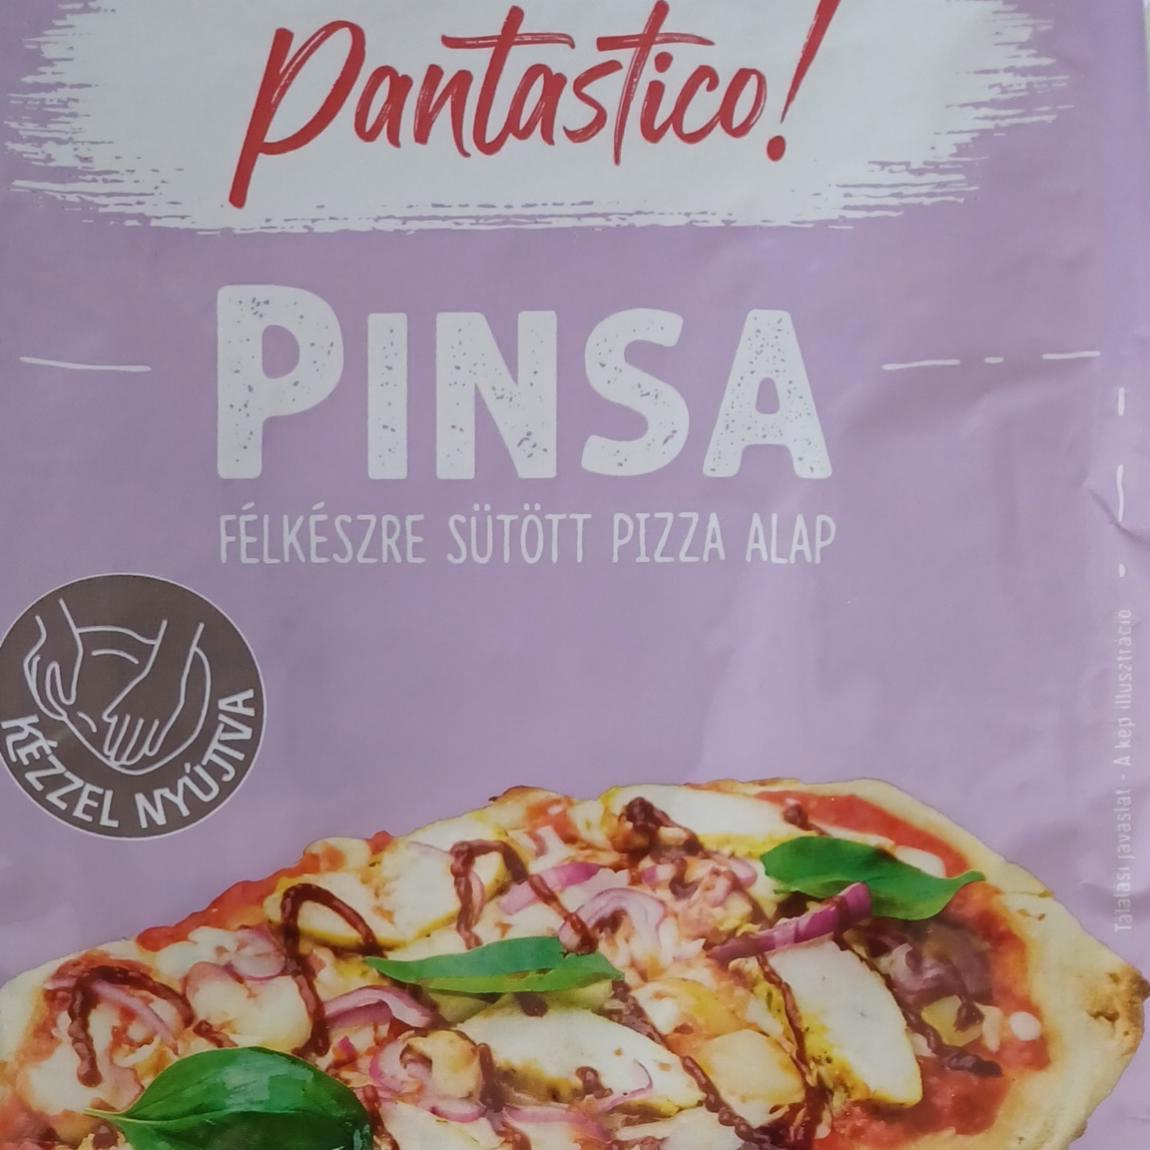 Képek - Pinsa félkészre sütött pizza alap Pantastico!